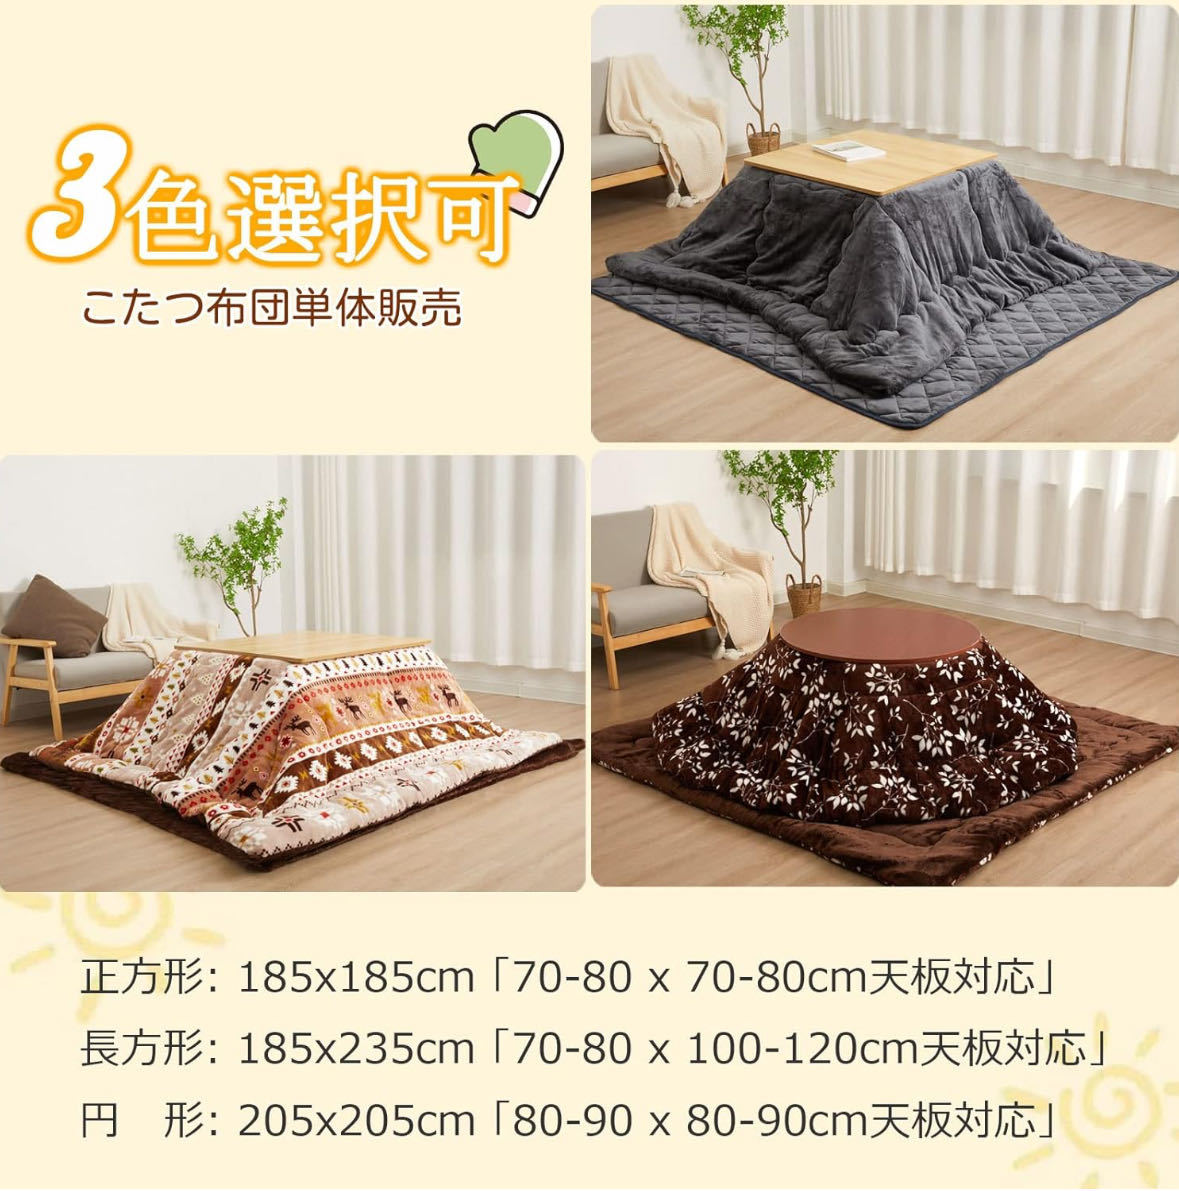  котацу futon kotatsu futon прямоугольный kotatsu futon прямоугольный толстый примерно 1.9KG с хлопком повышение температуры хлопок . использование body . Fit делать шитье двусторонний ... cтатическое электричество предотвращение 